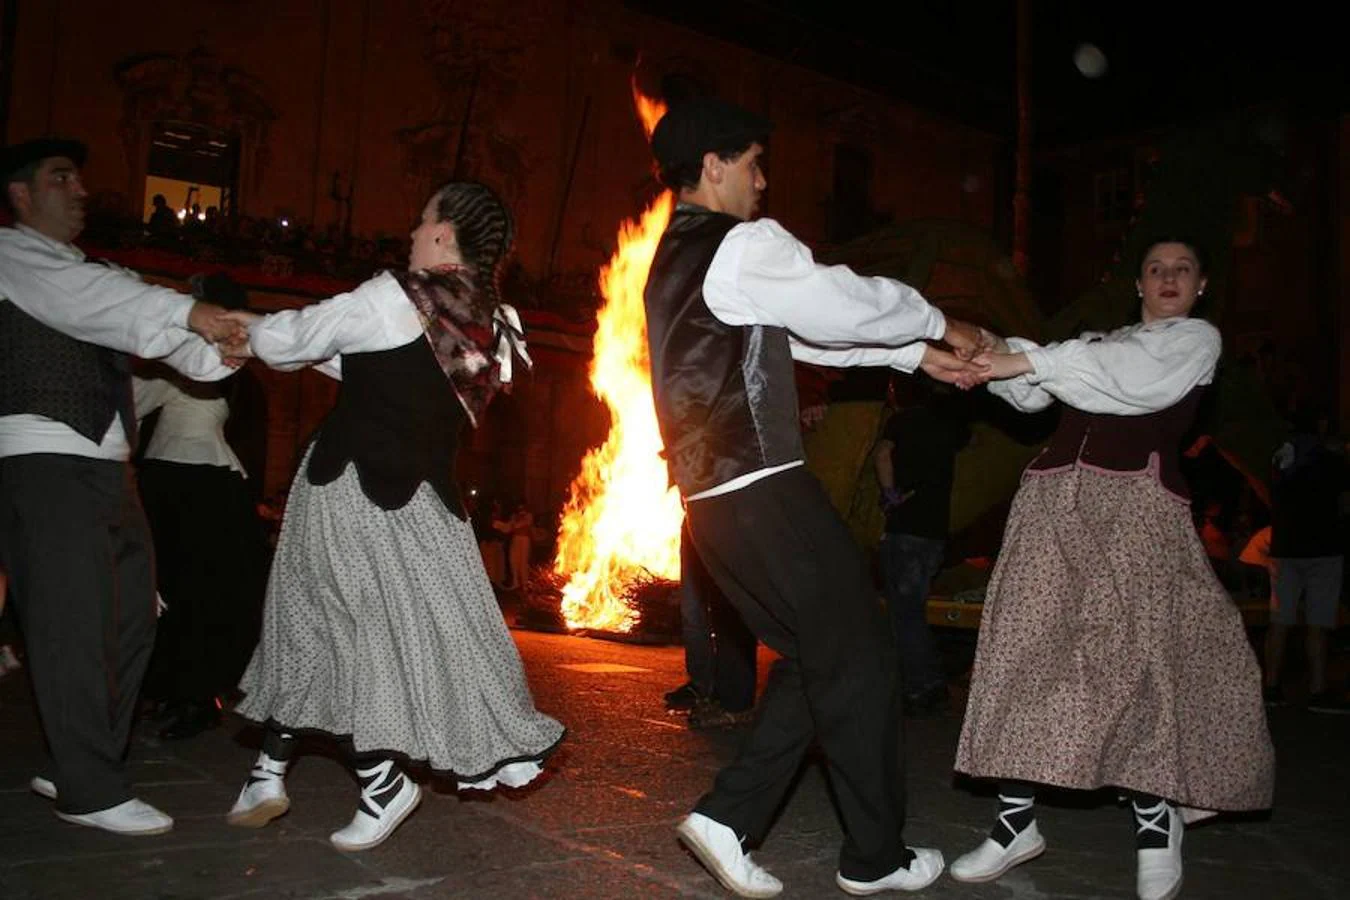 La muchedumbre tomó las calles a partir de las 21.00 para asistir a la 25º edición de Errementari Dantza, un espectáculo que es el punto culminante de la noche de San Juan y su hoguera, y al que siguió la tradicional Tamborrada de San Juan.